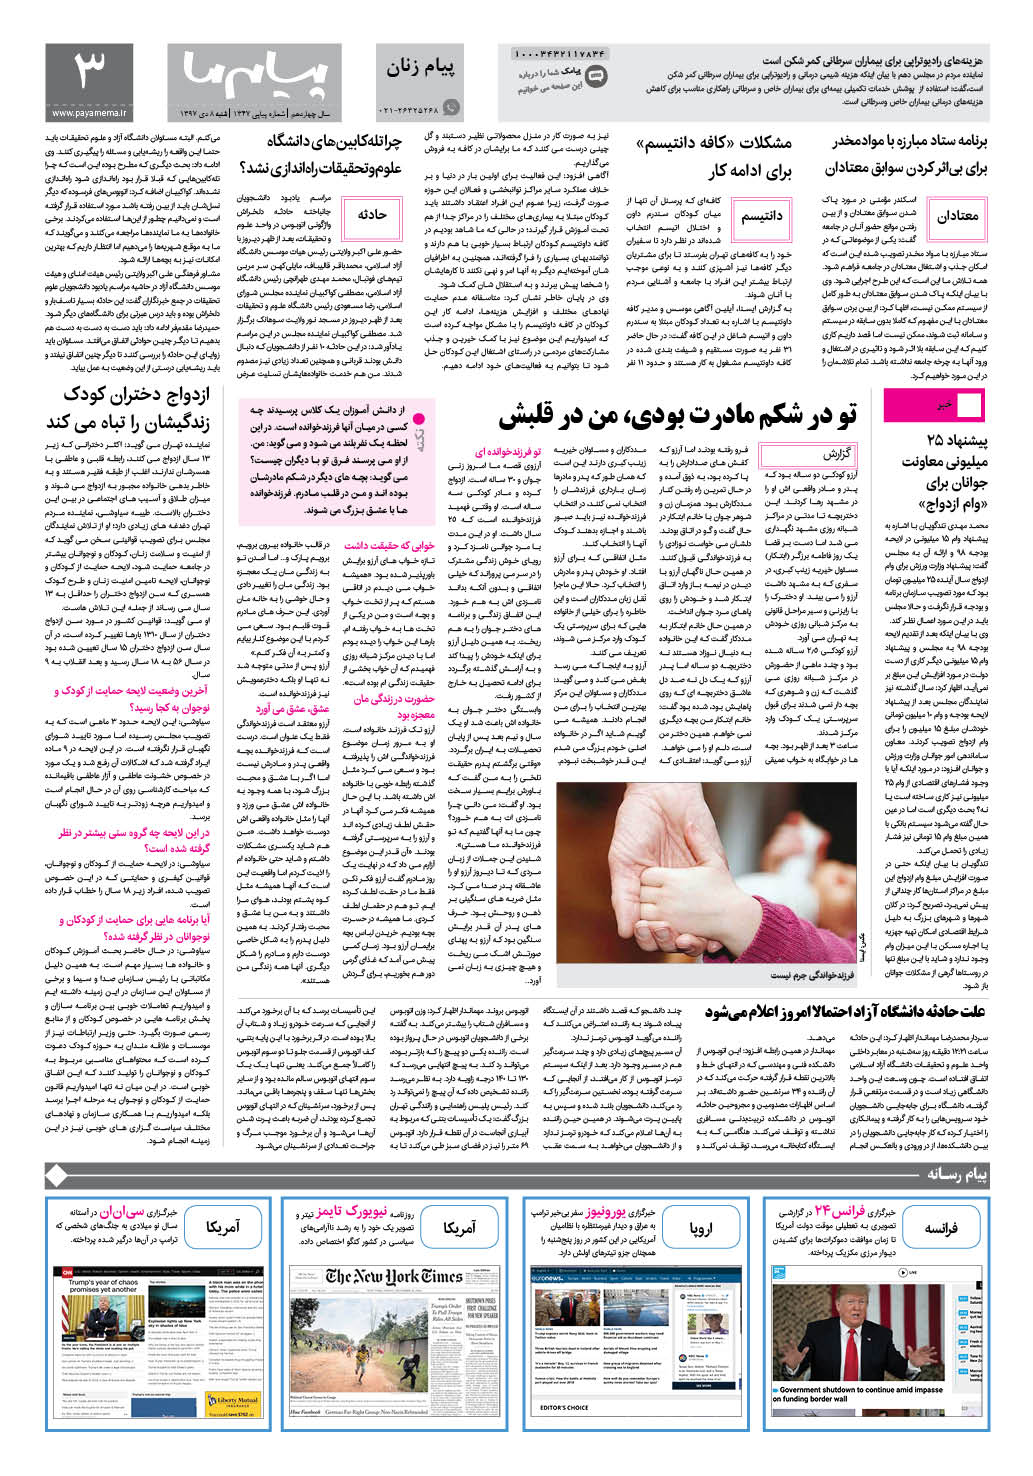 صفحه پیام زنان شماره 1347 روزنامه پیام ما